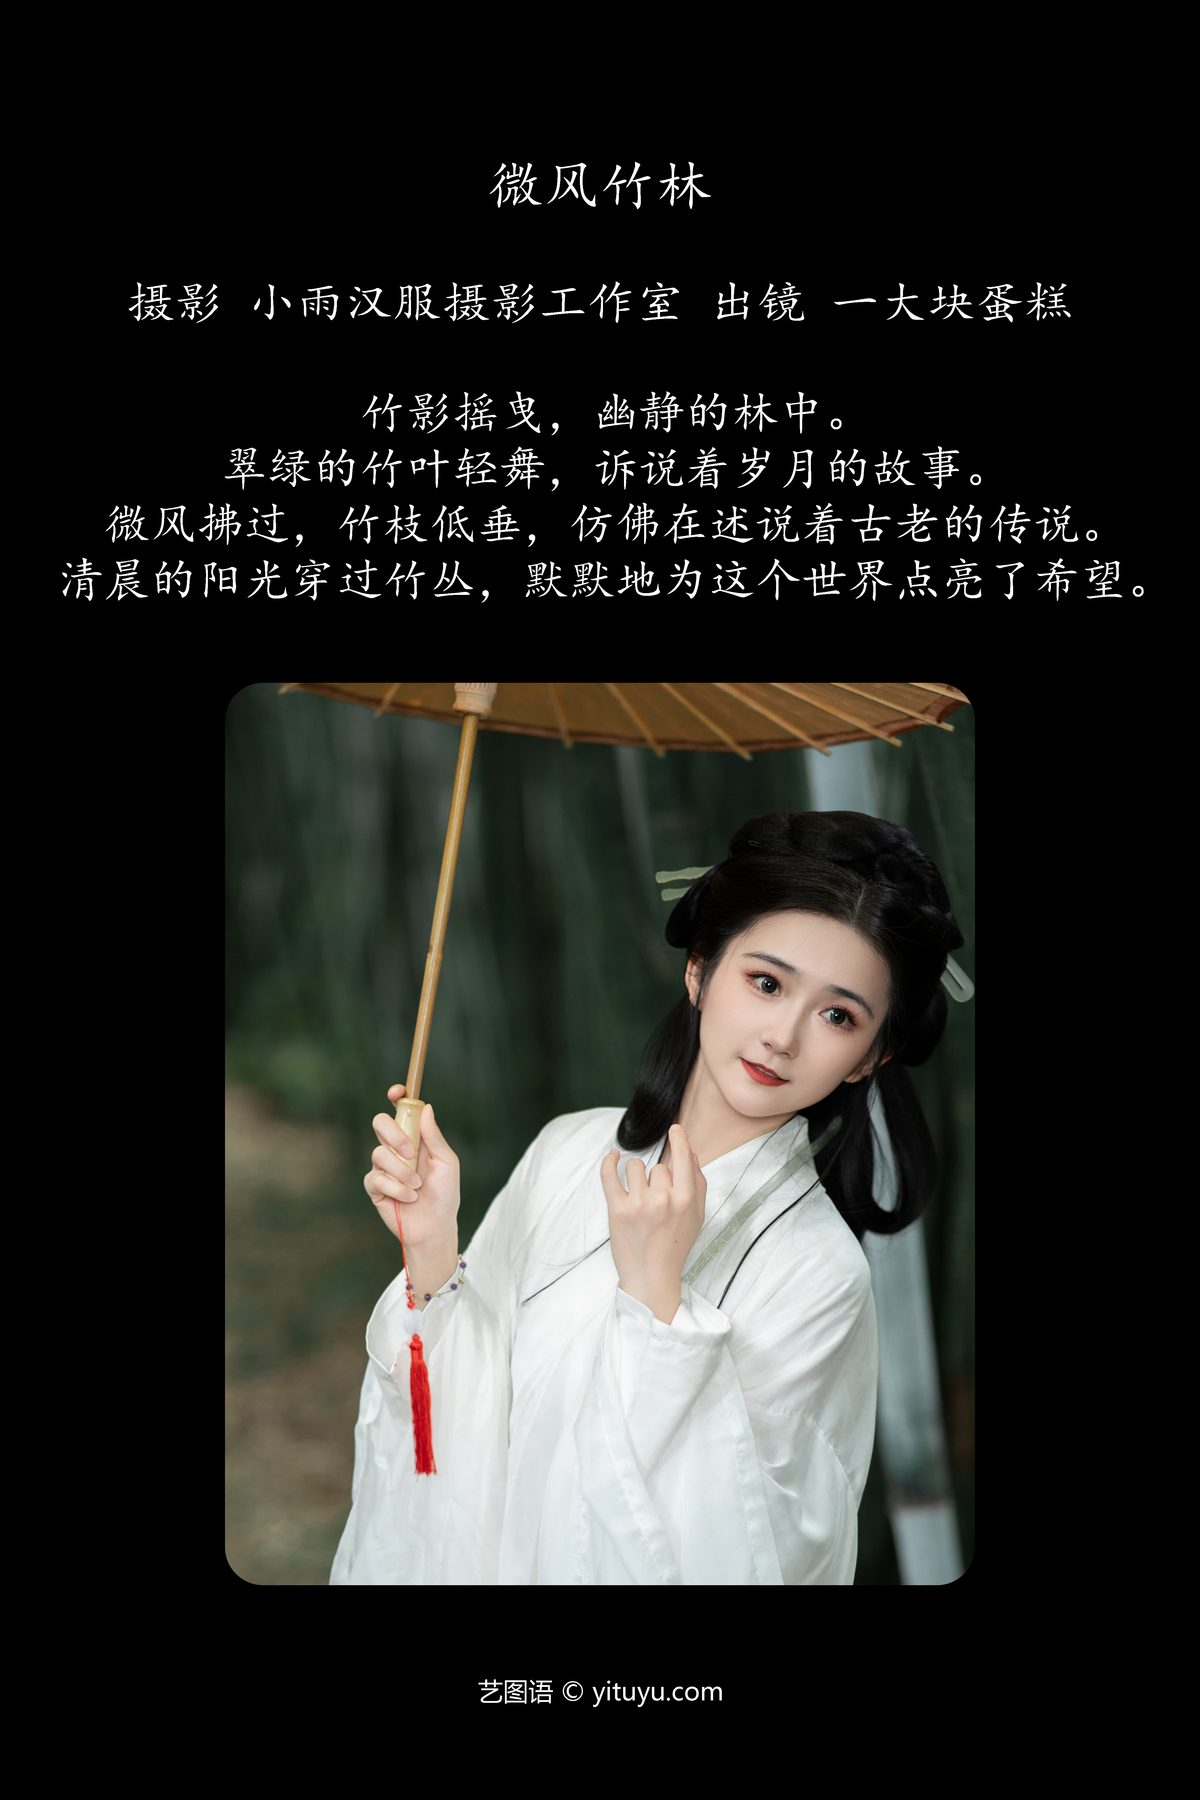 YiTuYu艺图语 Vol 6000 Yi Da Kuai Dan Gao 0002 3951565327.jpg